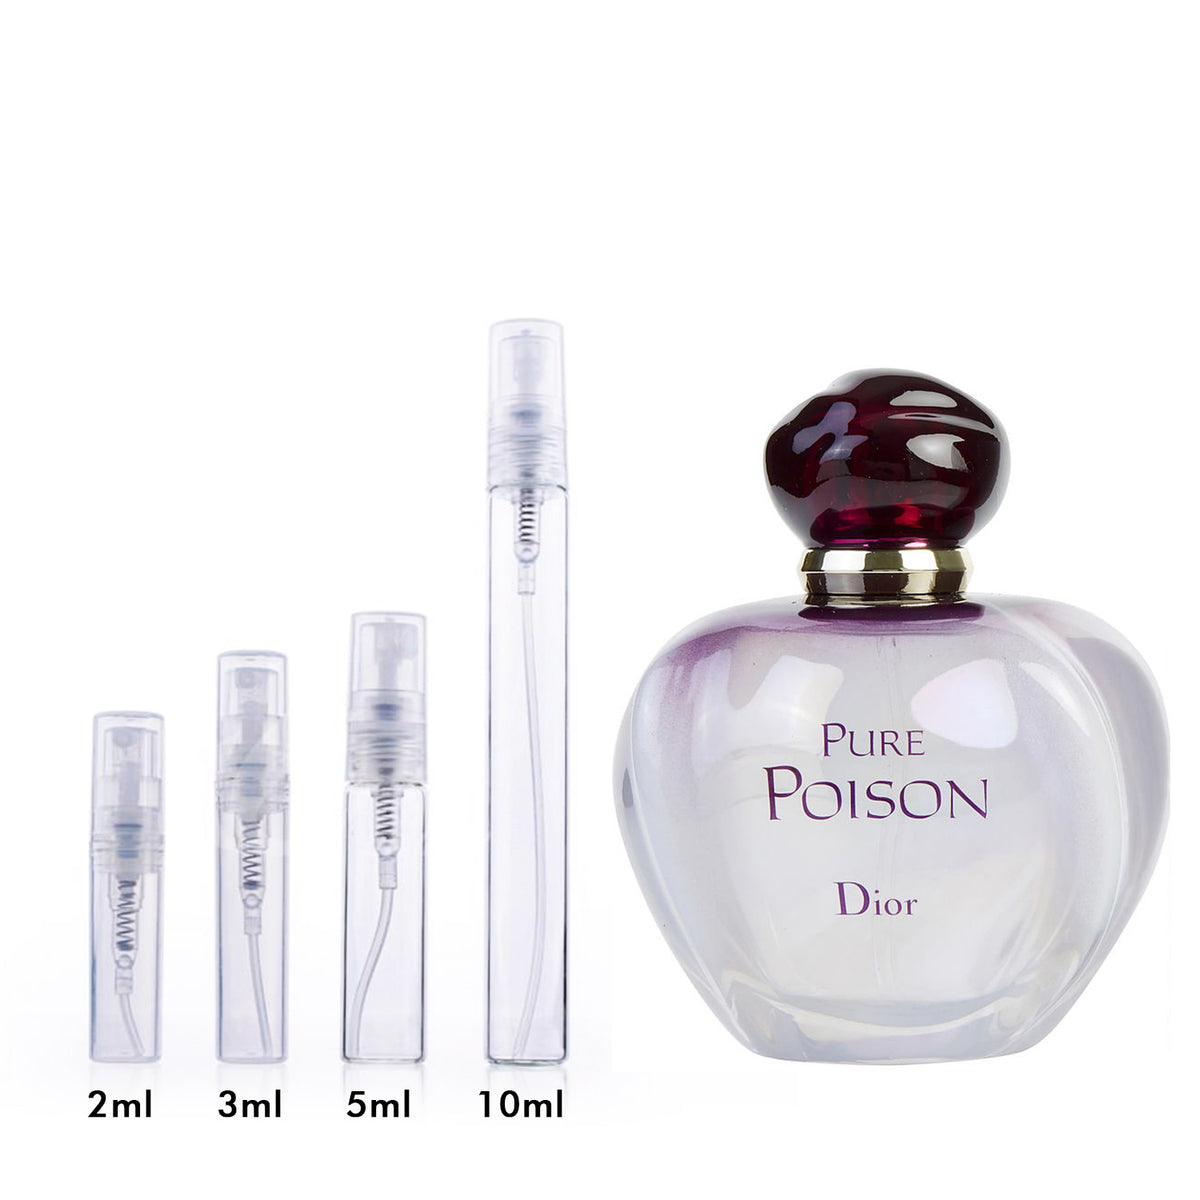 Dior Pure Poison Eau de Parfum for Women